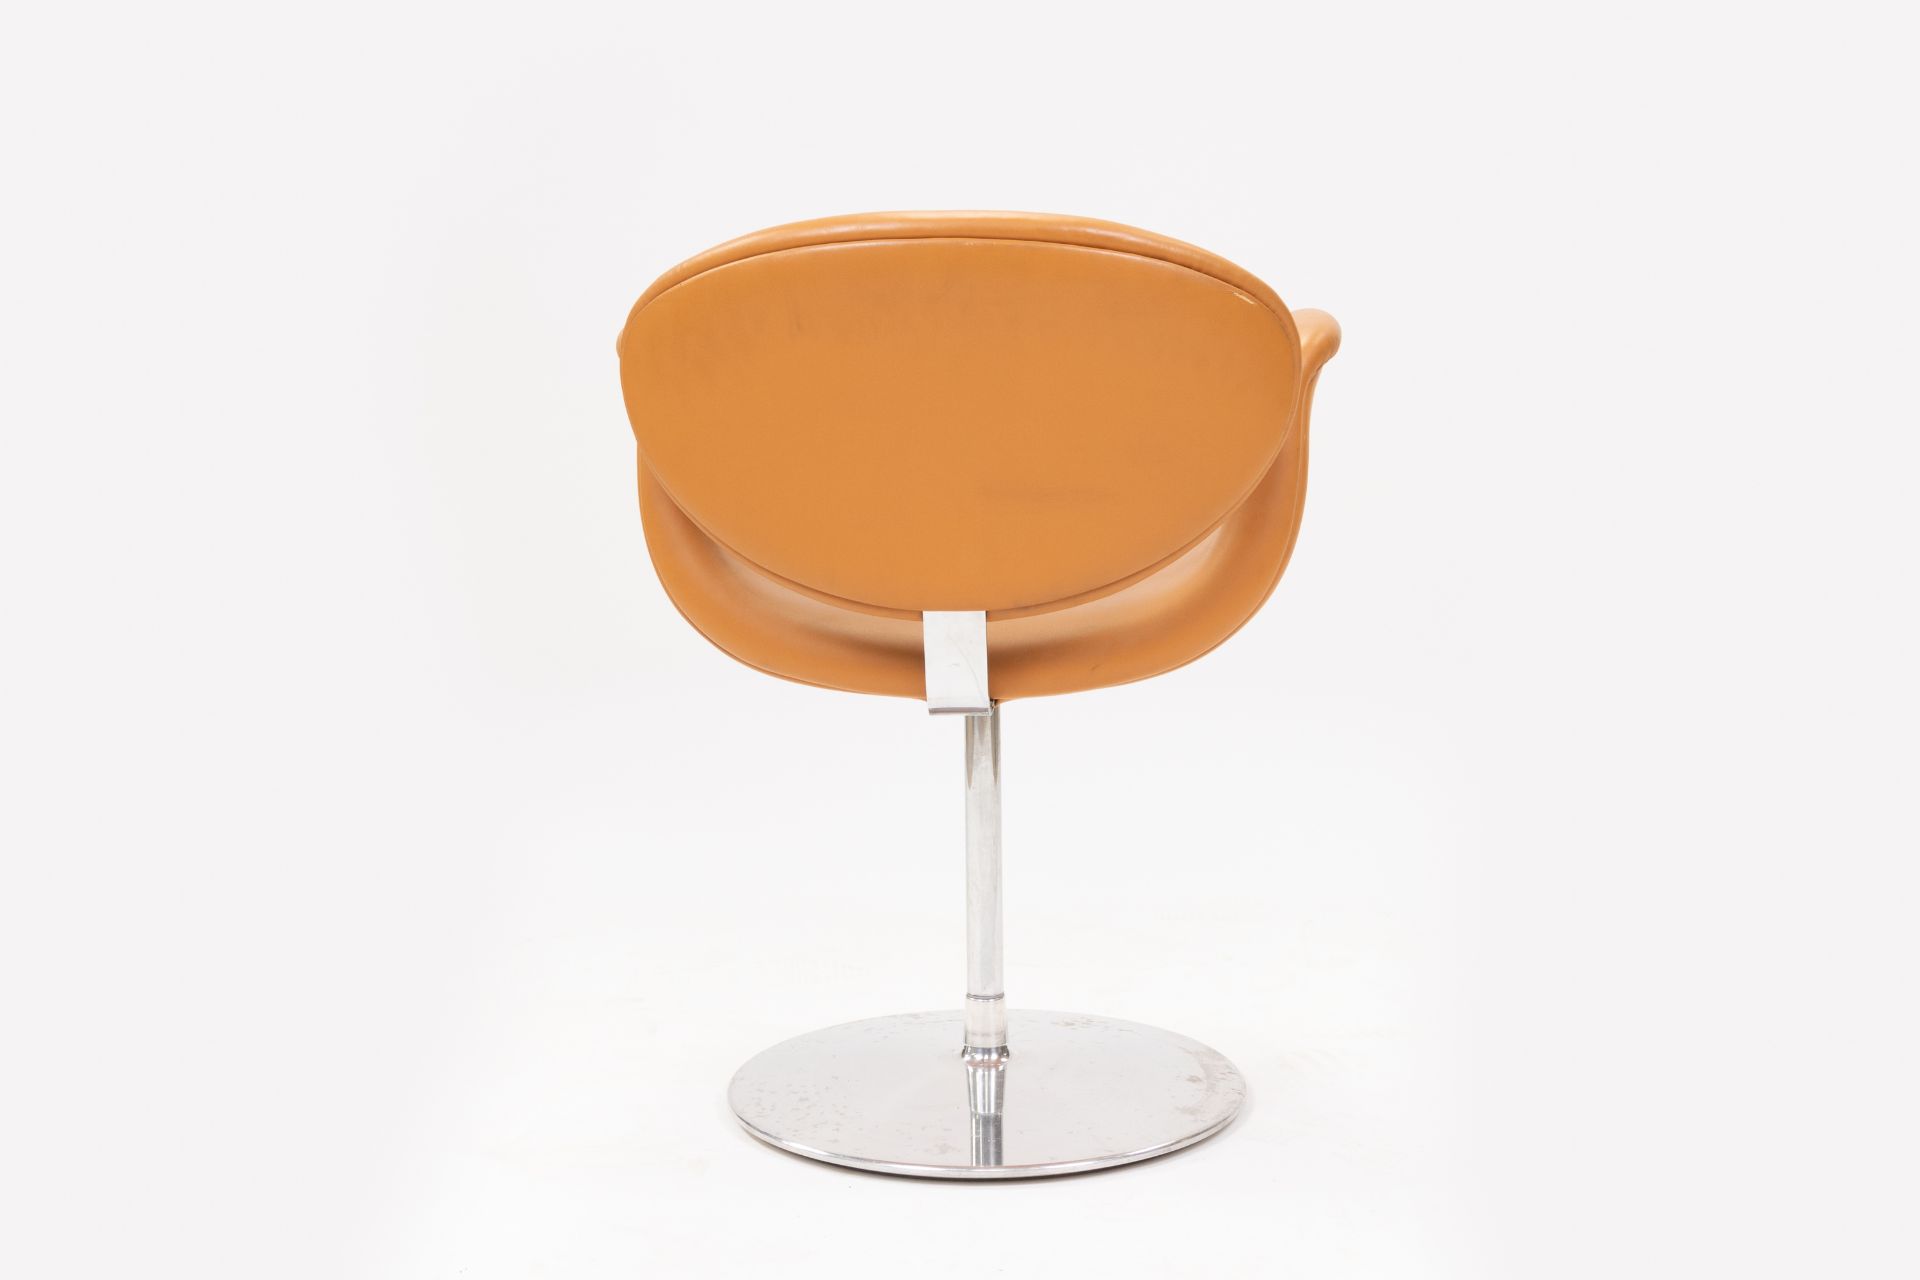 Little Tulip Artifort Swivel Chair Design by Pierre Paulin - Image 3 of 4